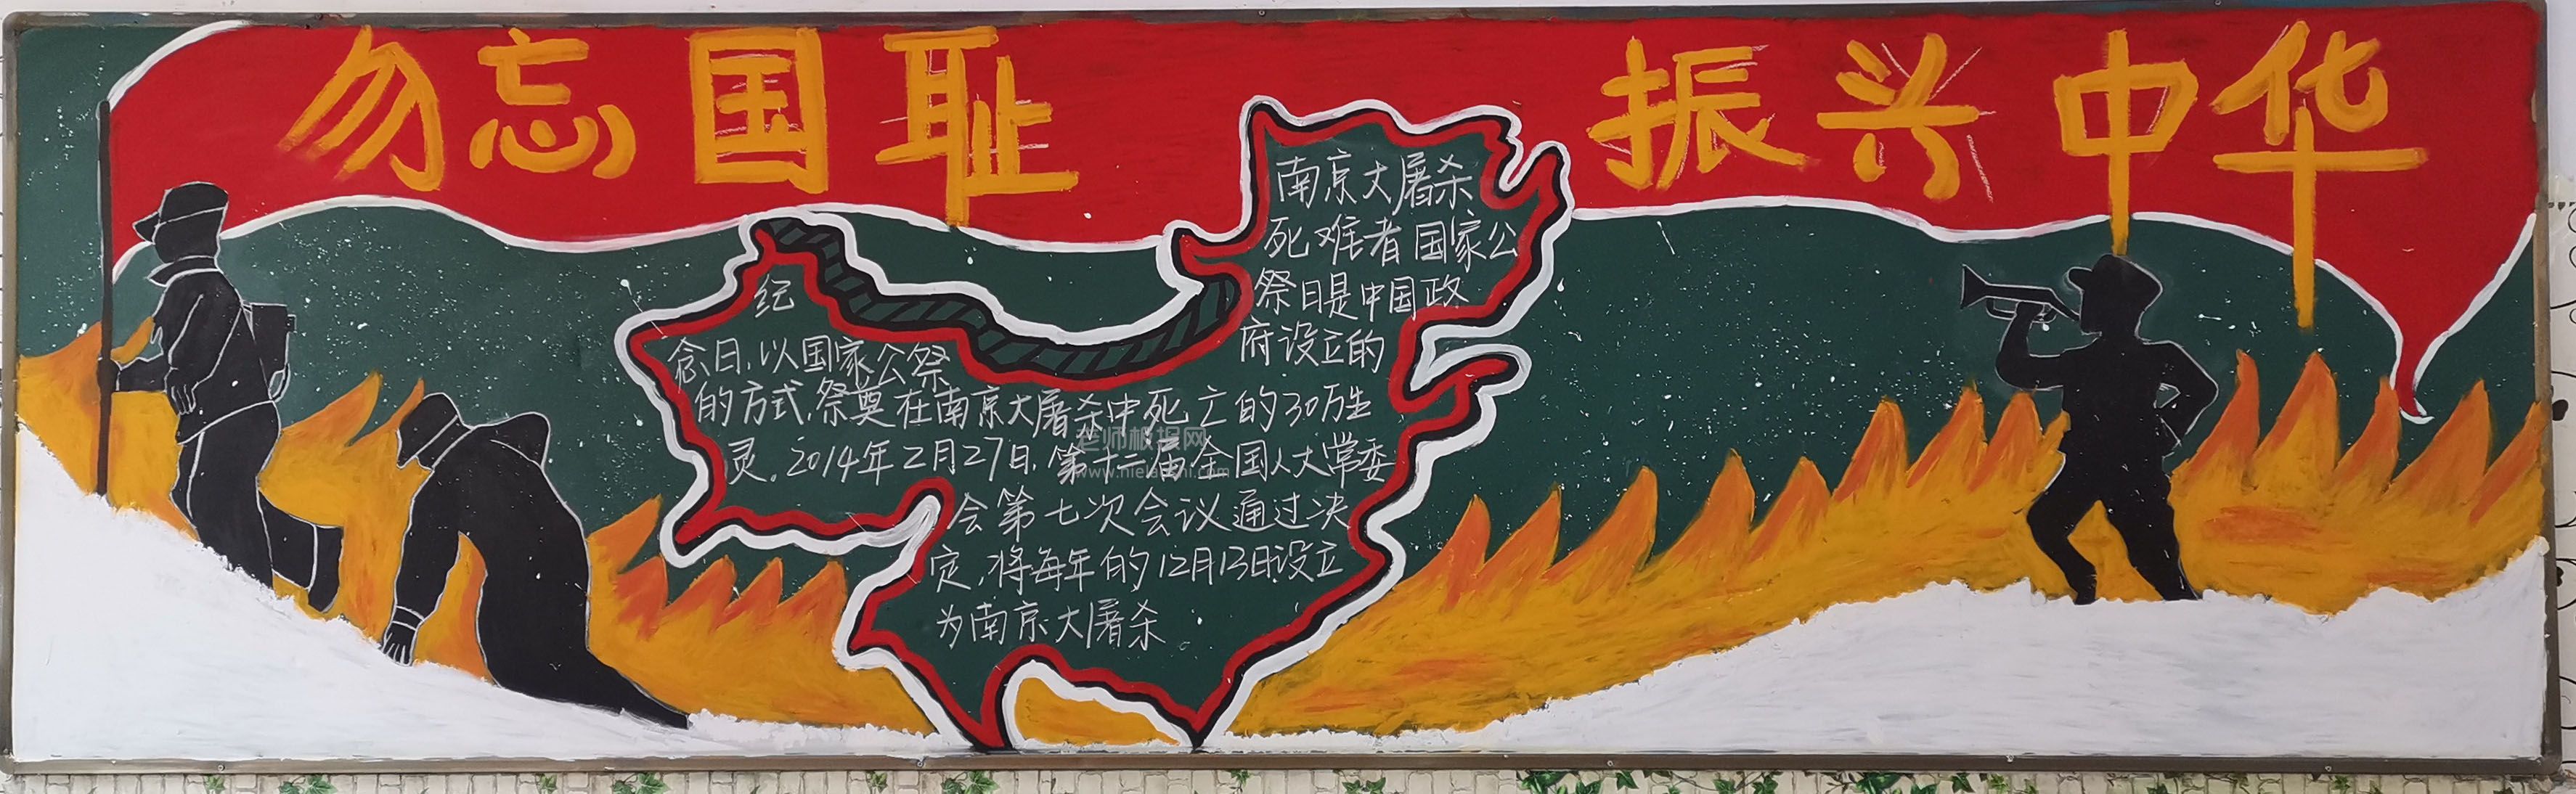 南京大屠杀死难者国家公祭日黑板报 勿忘国耻 振兴中华